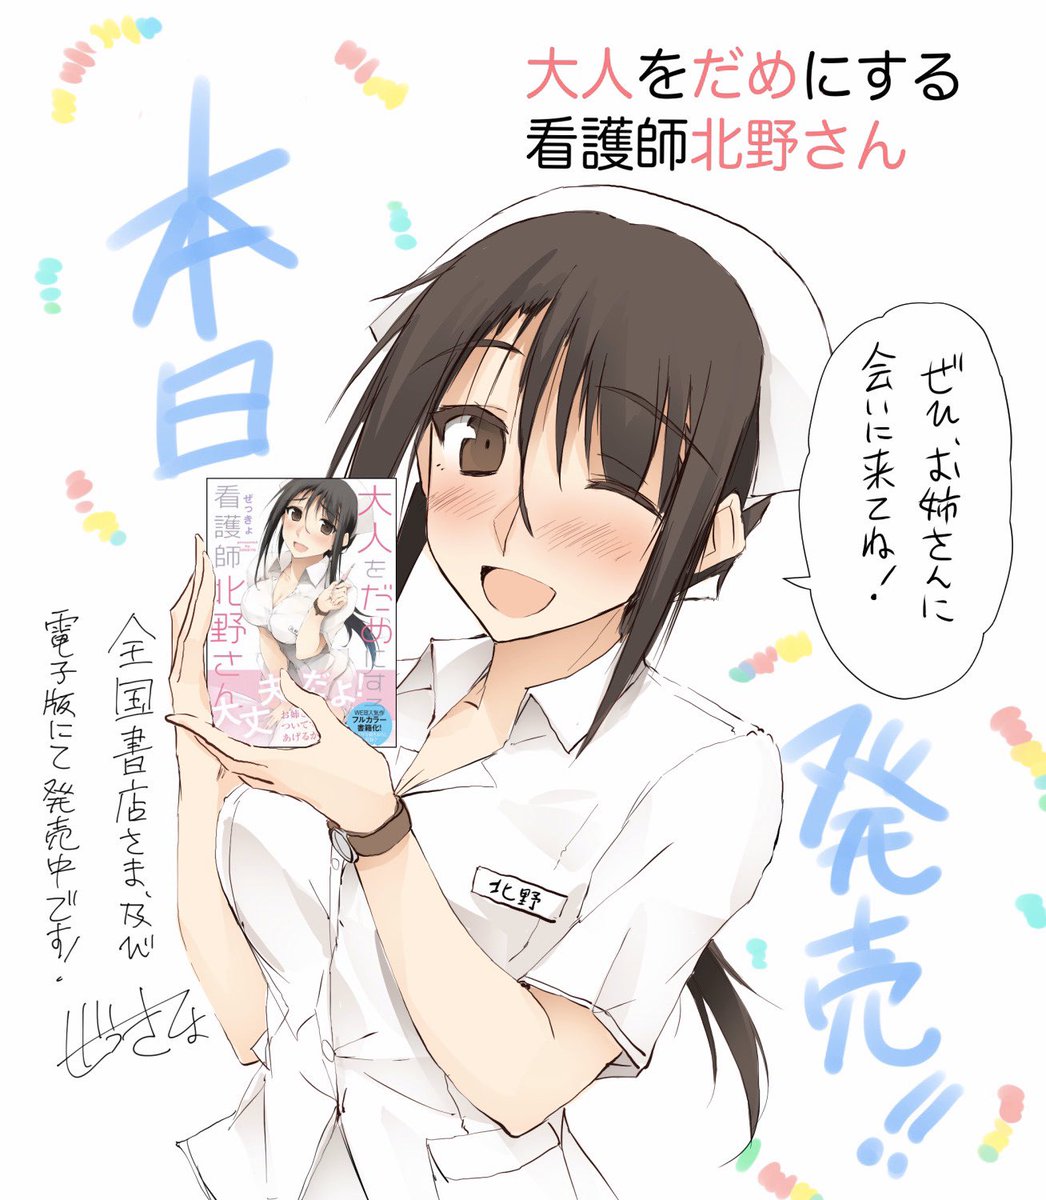 単行本『大人をだめにする看護師北野さん 』
KADOKAWAさんから本日(3/10)より全国書店および電子版にて発売開始です‼️
#大人をだめにする看護師北野さん 